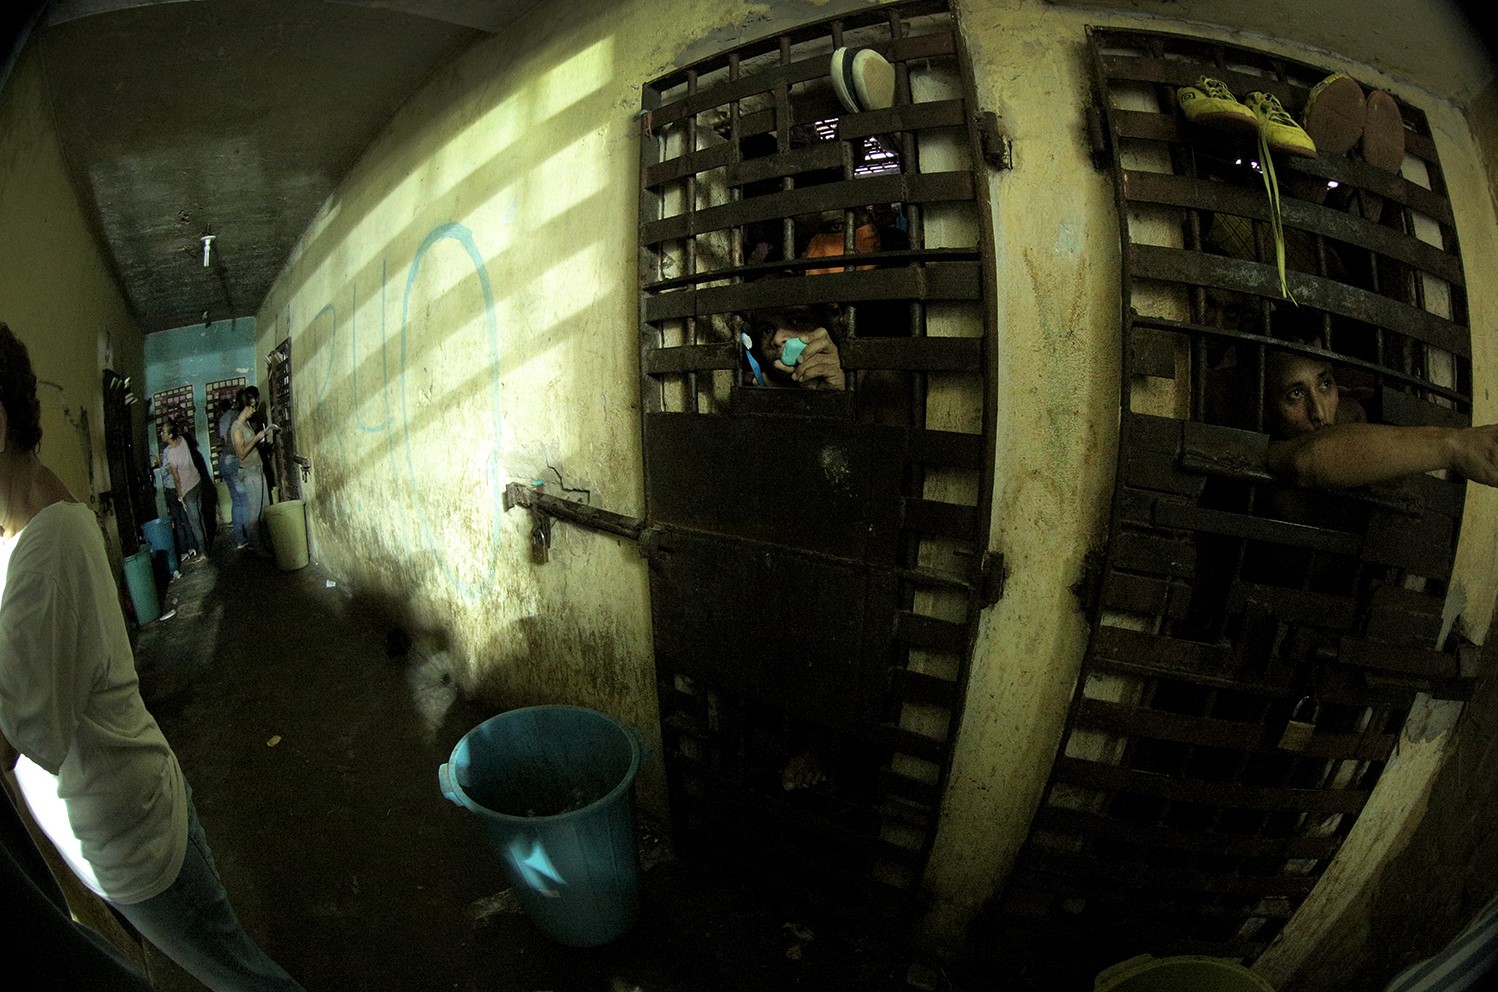 Unidade penitenciária superlotada em Pedrinhas: denúncias de comida estragada, falta de atendimento médico, maus tratos e tortura (Foto: Conectas - 2015)